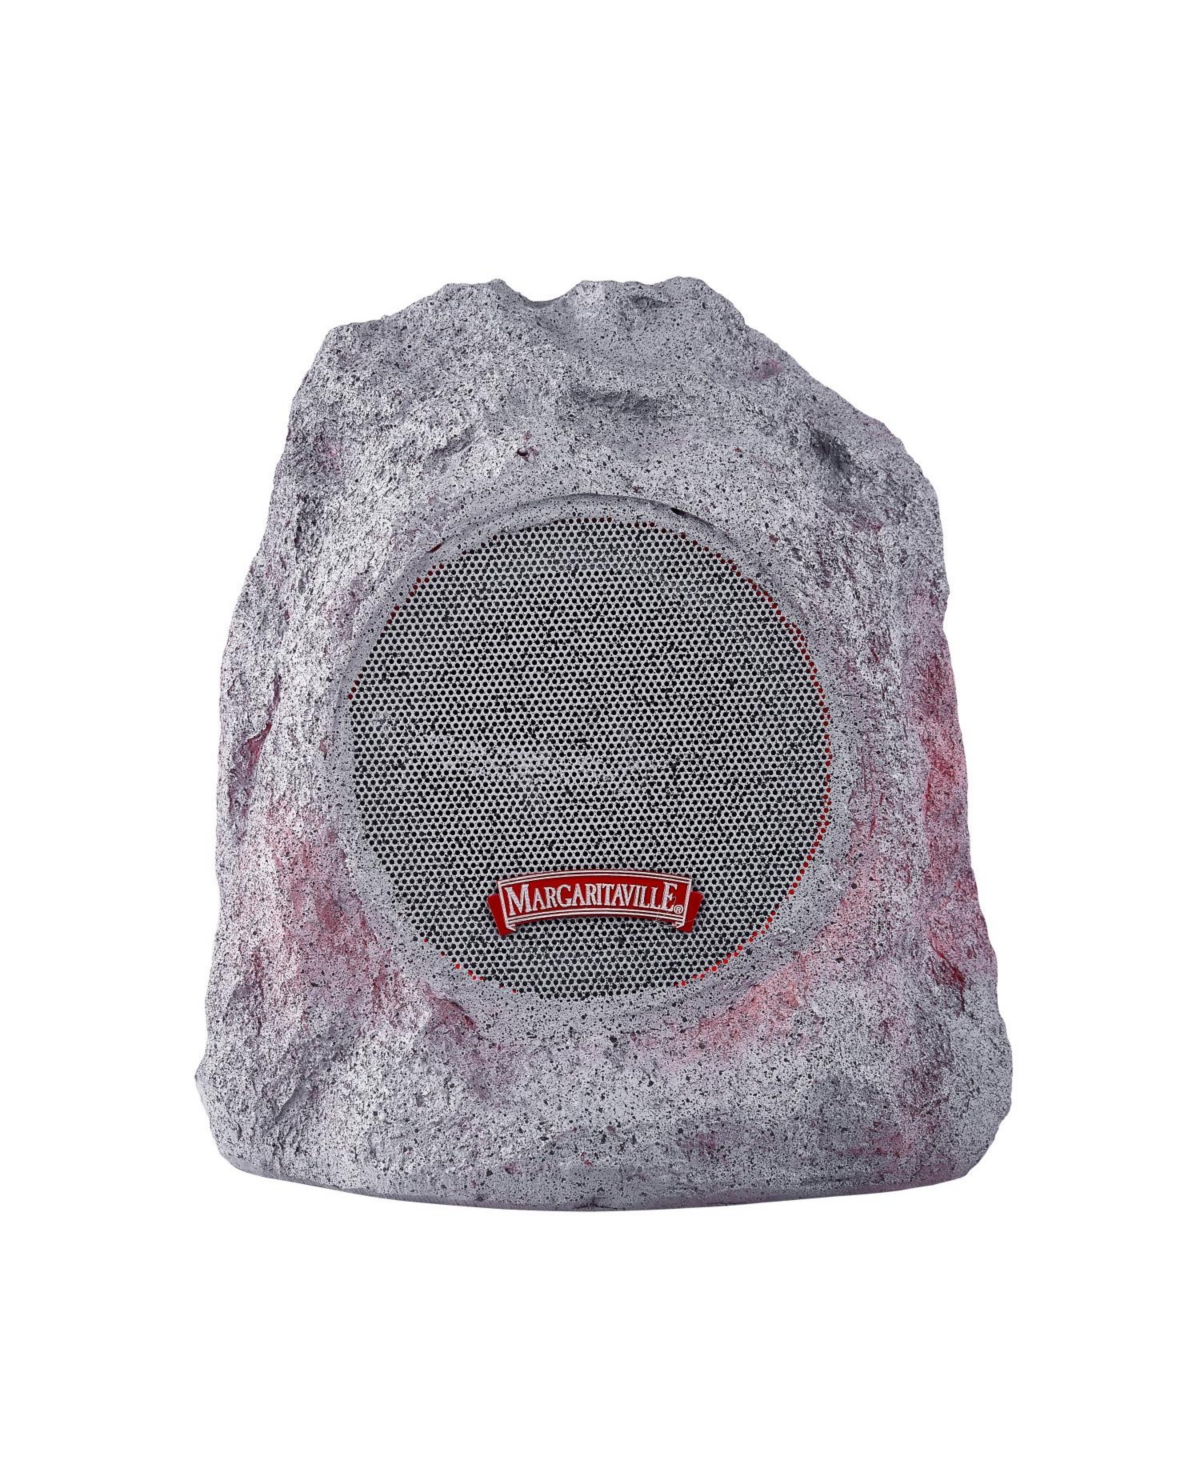 Margaritaville Multi Color Led Rock Wireless Speaker In Gray